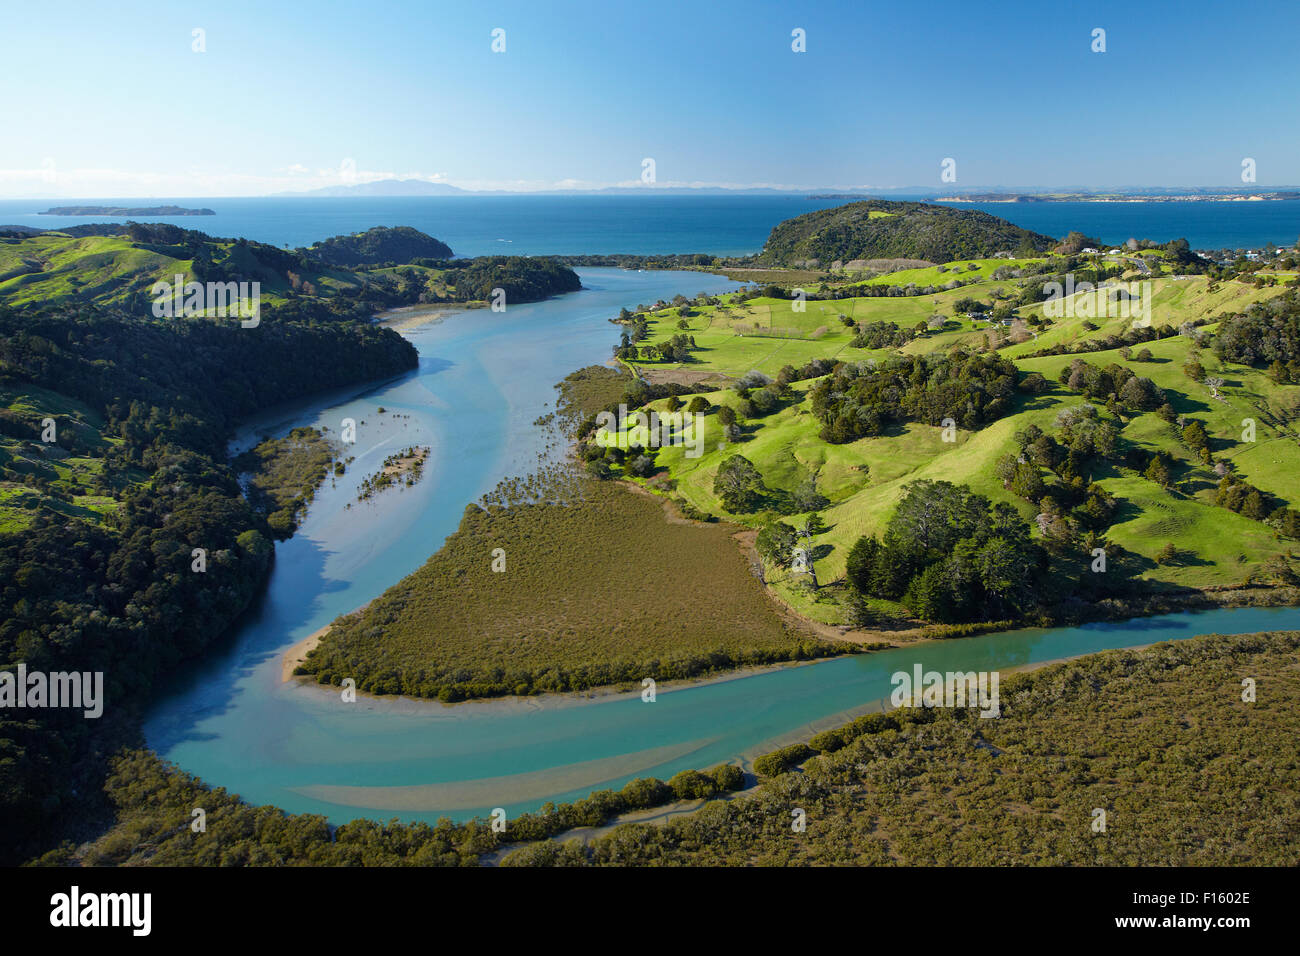 Puhoi River, North Auckland, île du Nord, Nouvelle-Zélande - vue aérienne Banque D'Images